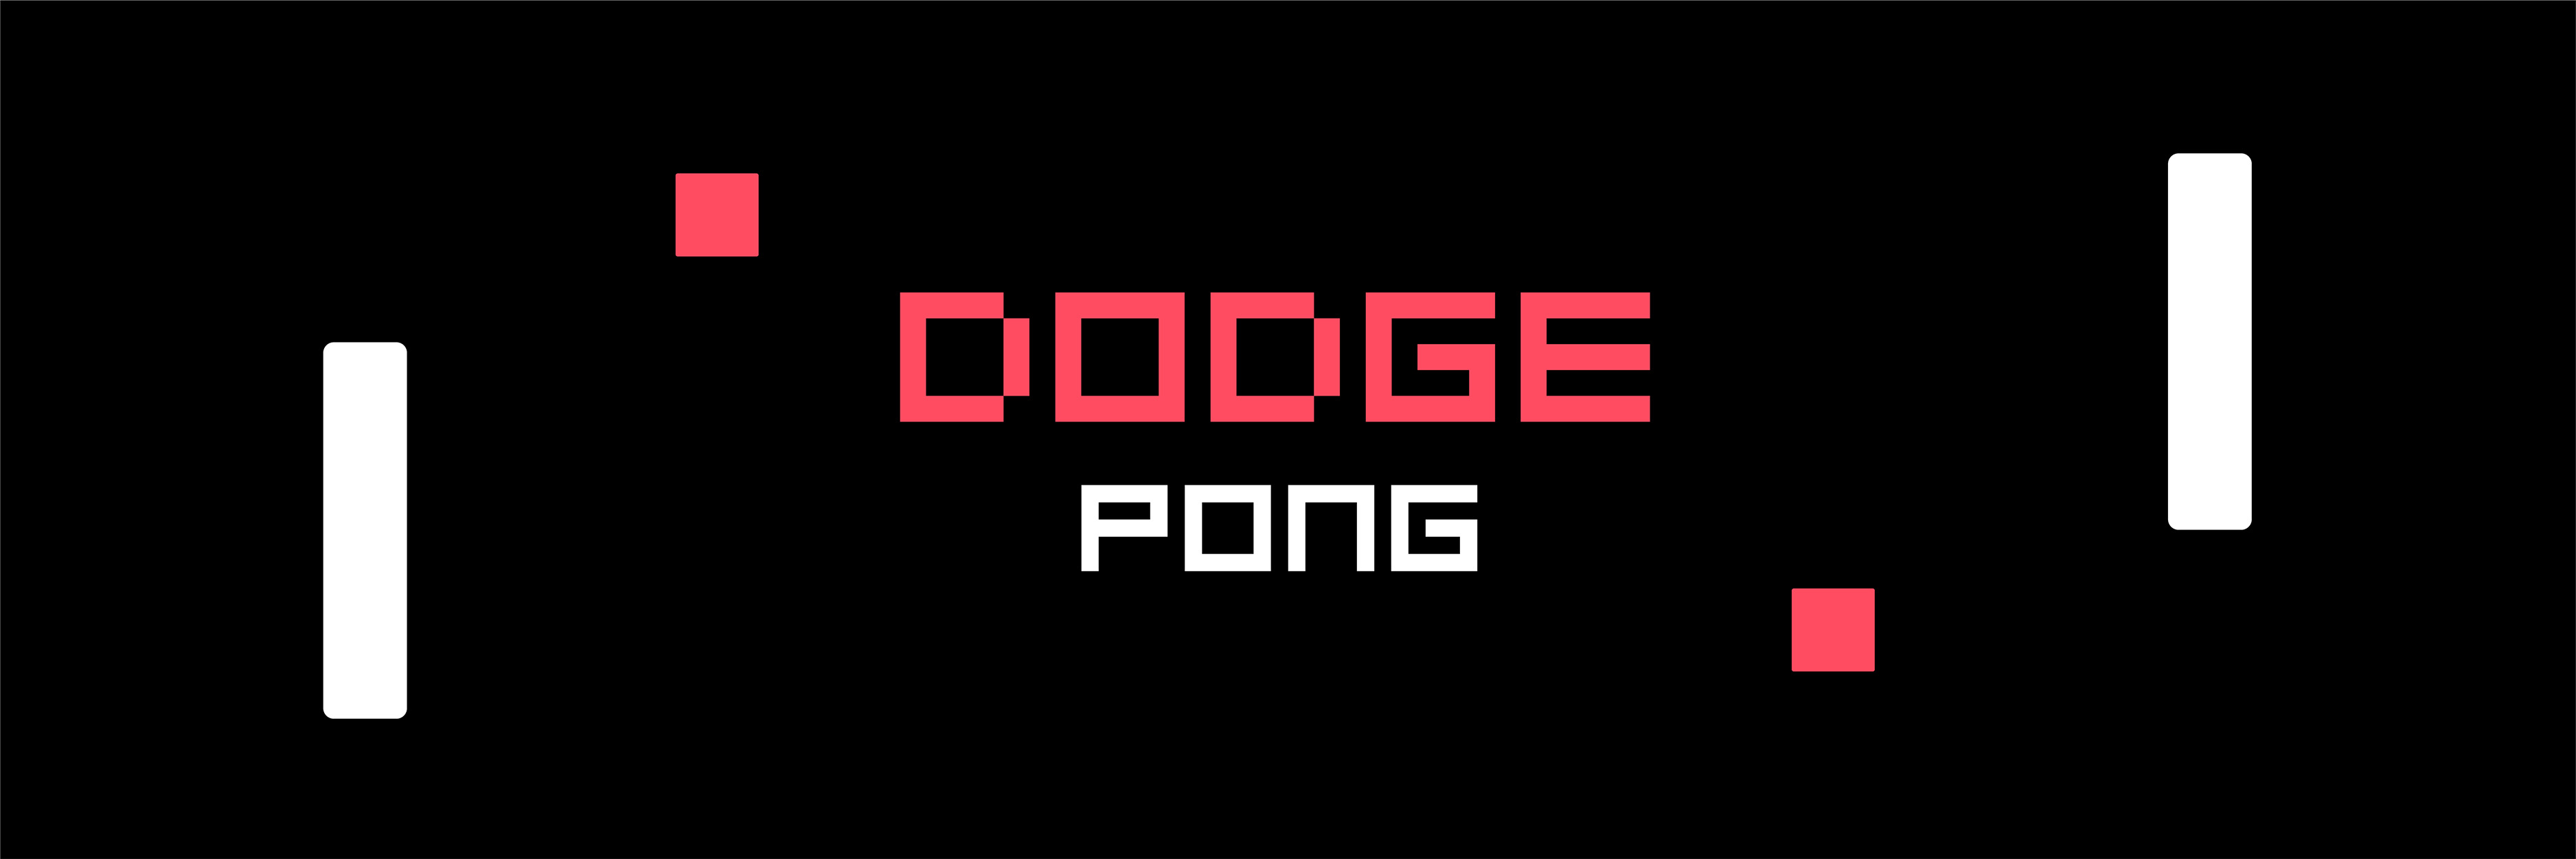 DODGE PONG